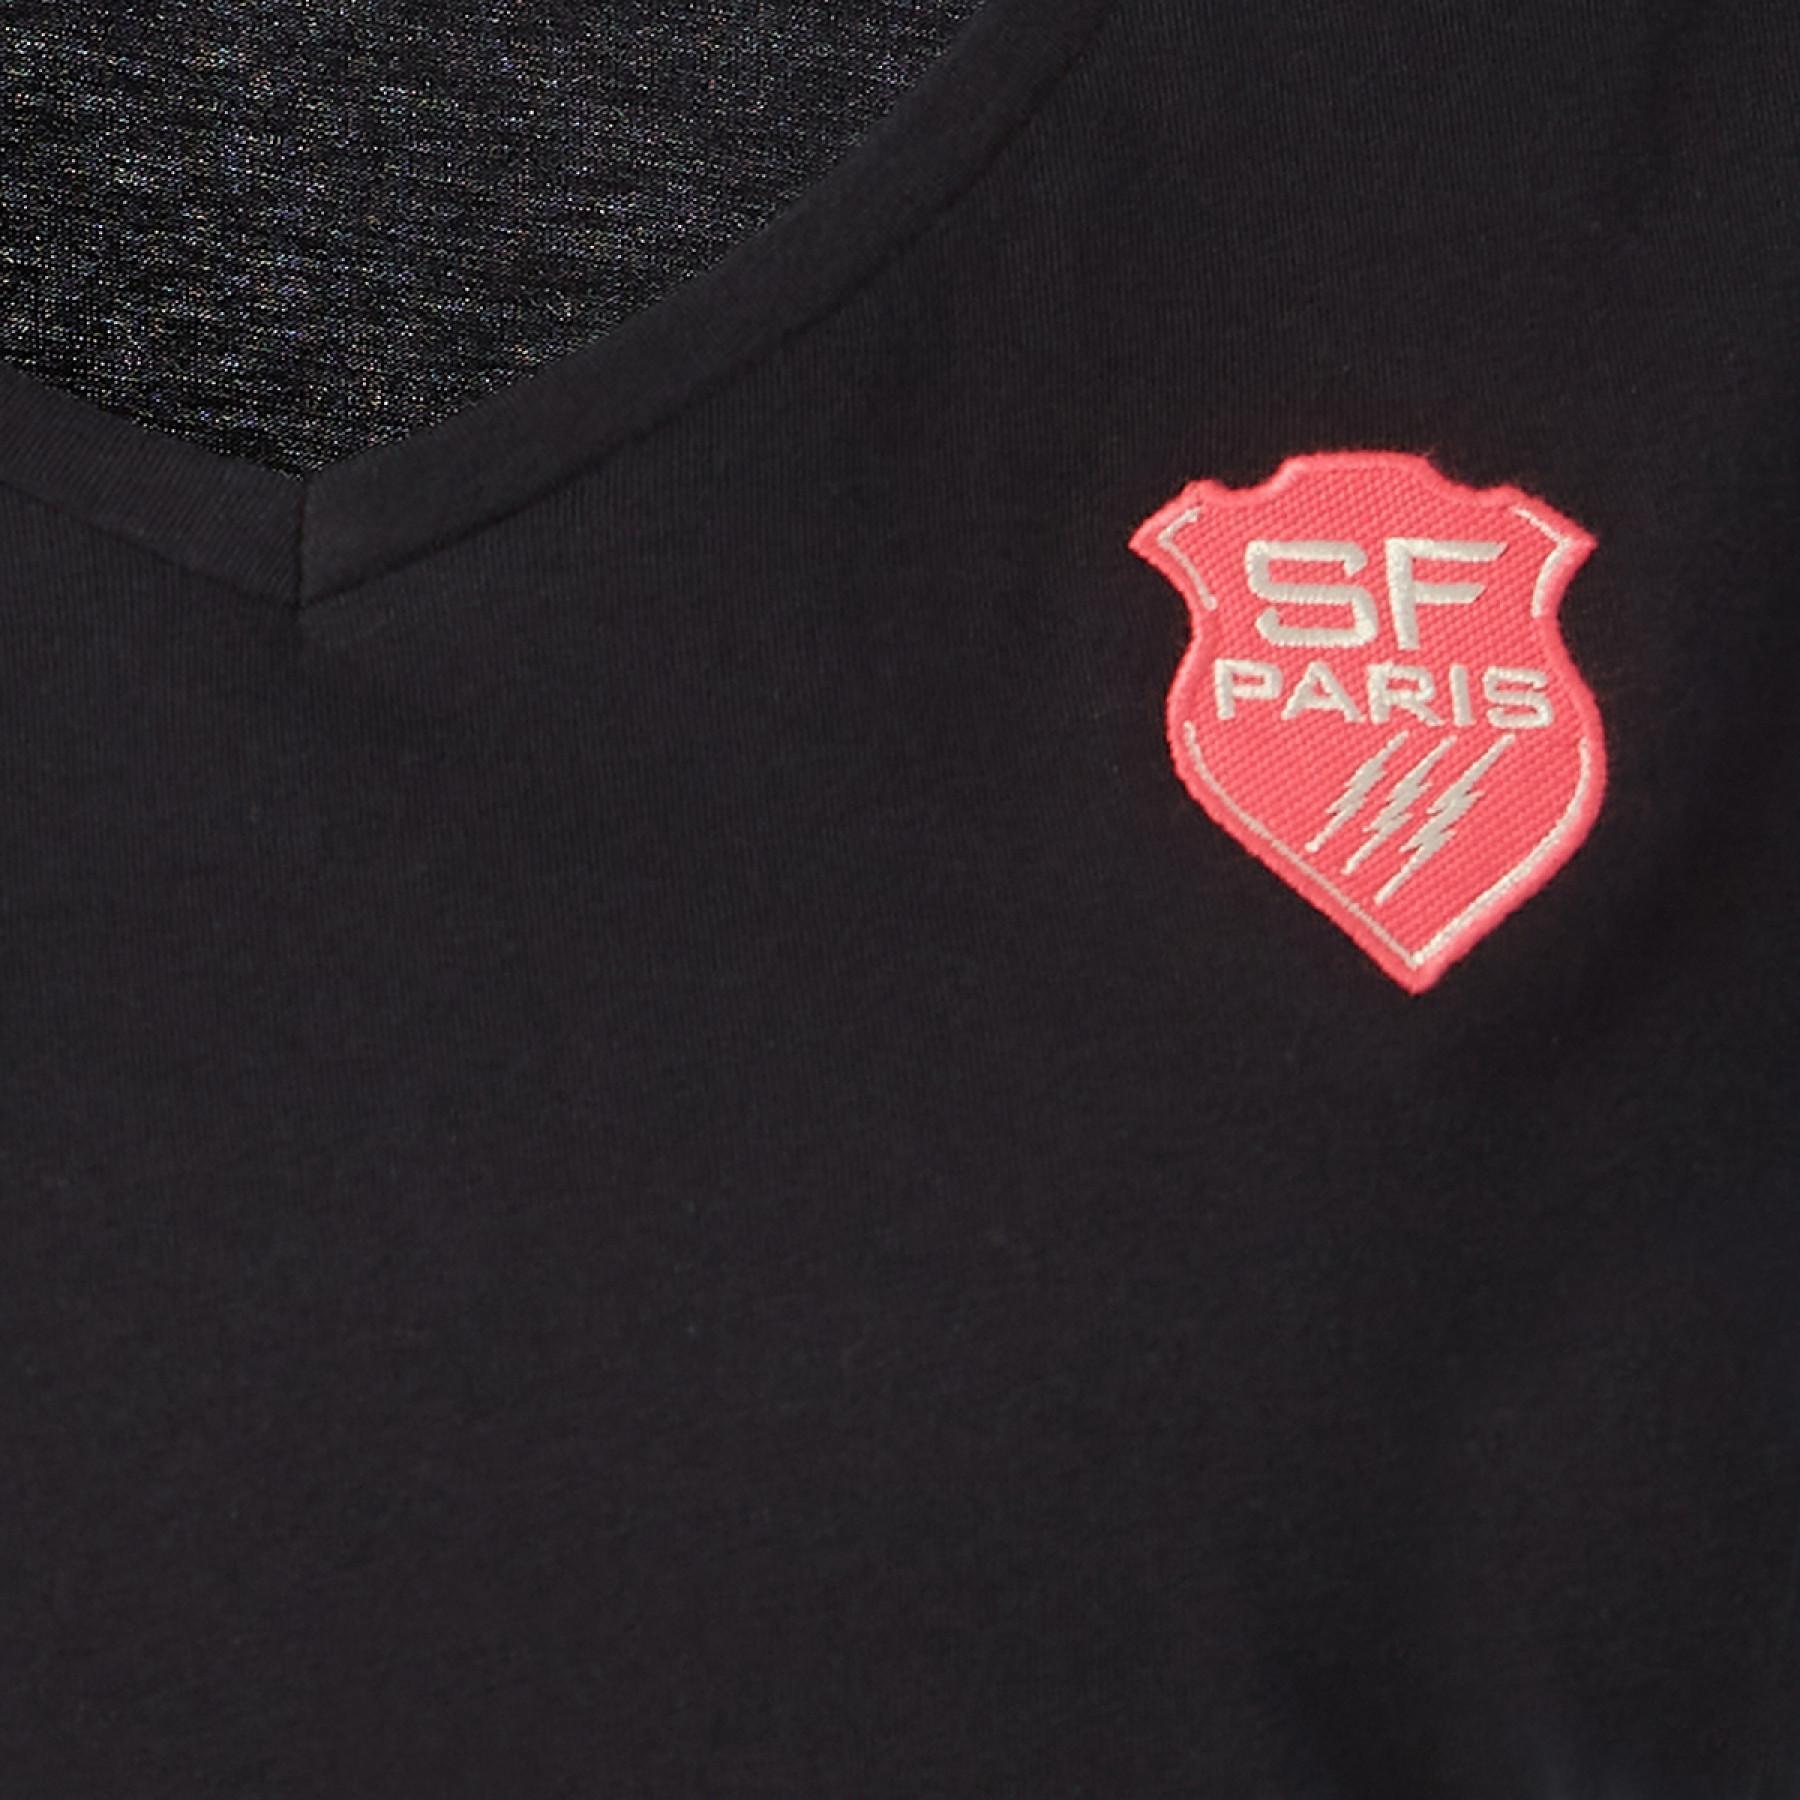 Camiseta de mujer Stade Français 2020/21 lea